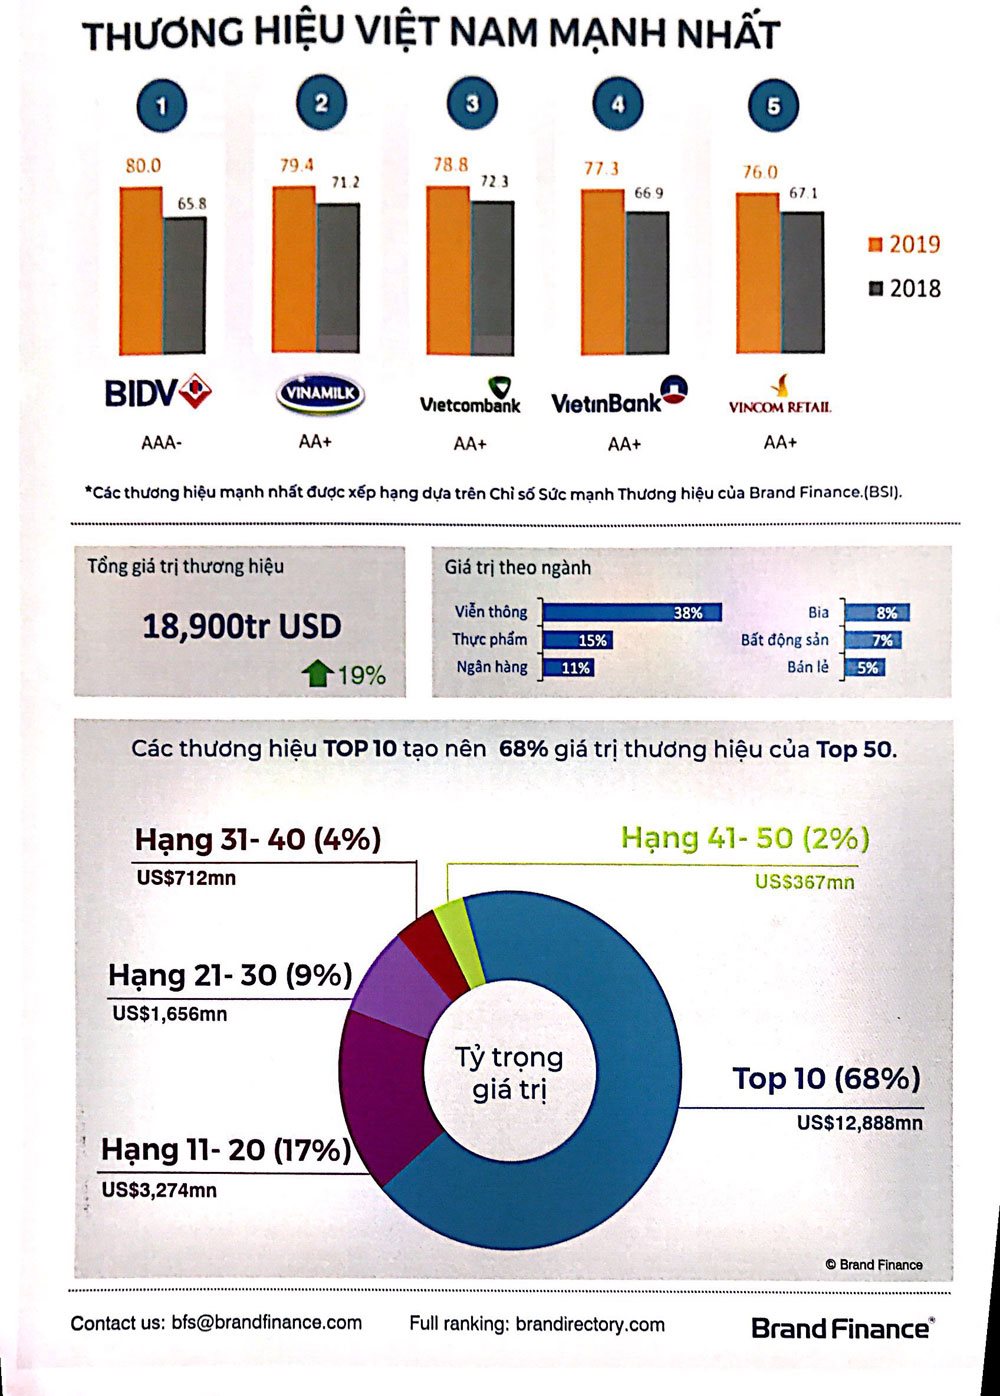 50 thương hiệu mạnh nhất Việt Nam trị giá 18,9 tỷ USD, ngành viễn thông chiếm 38%